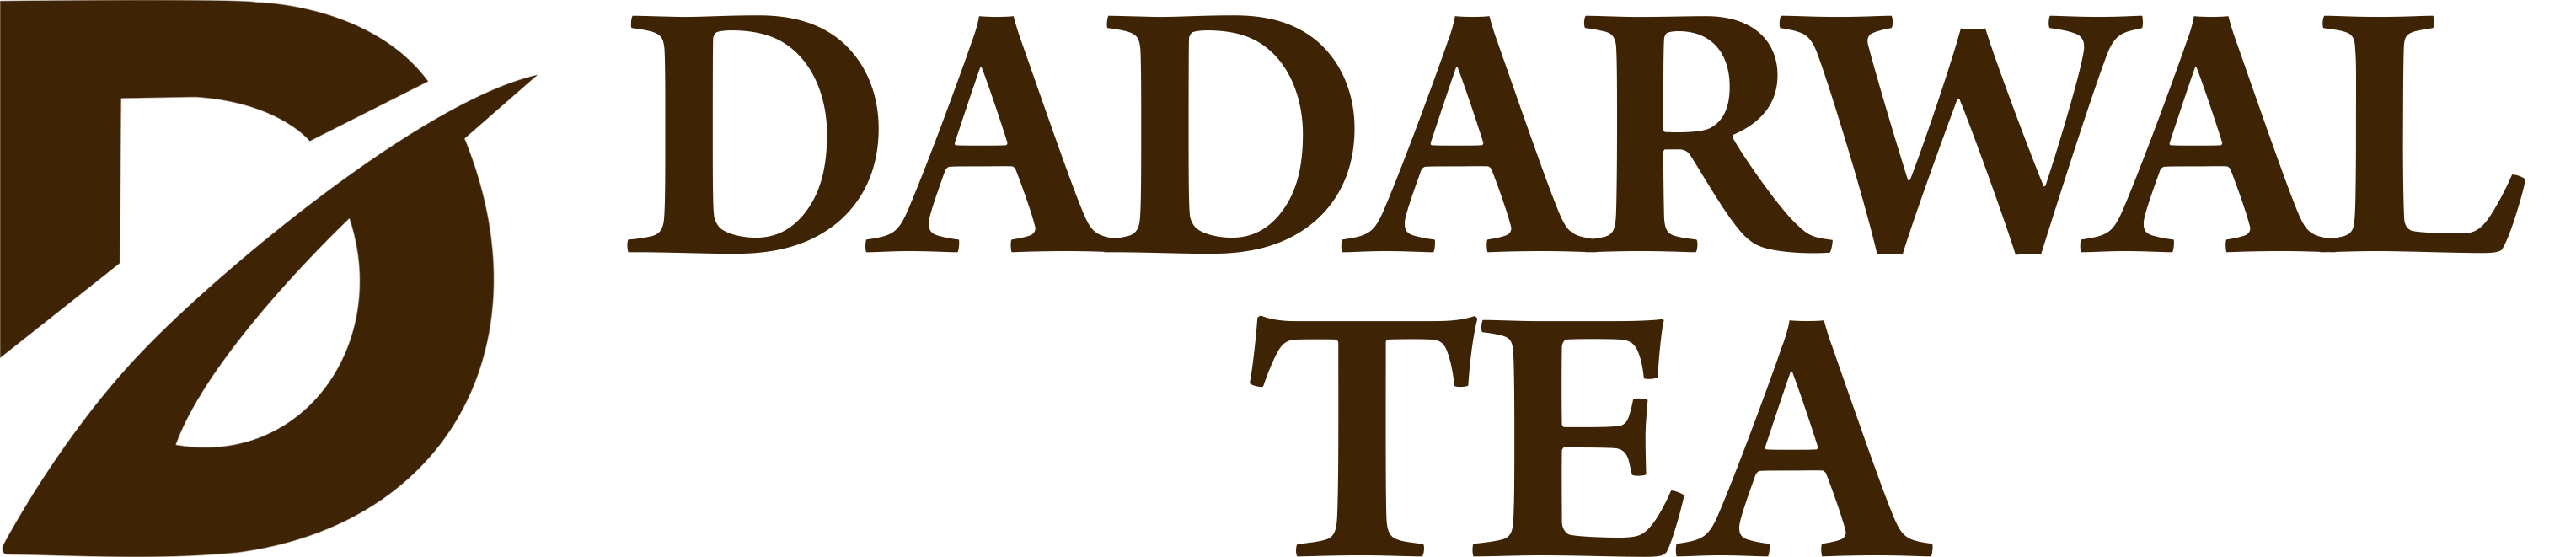 Dadarwal Tea Jaipur Logo